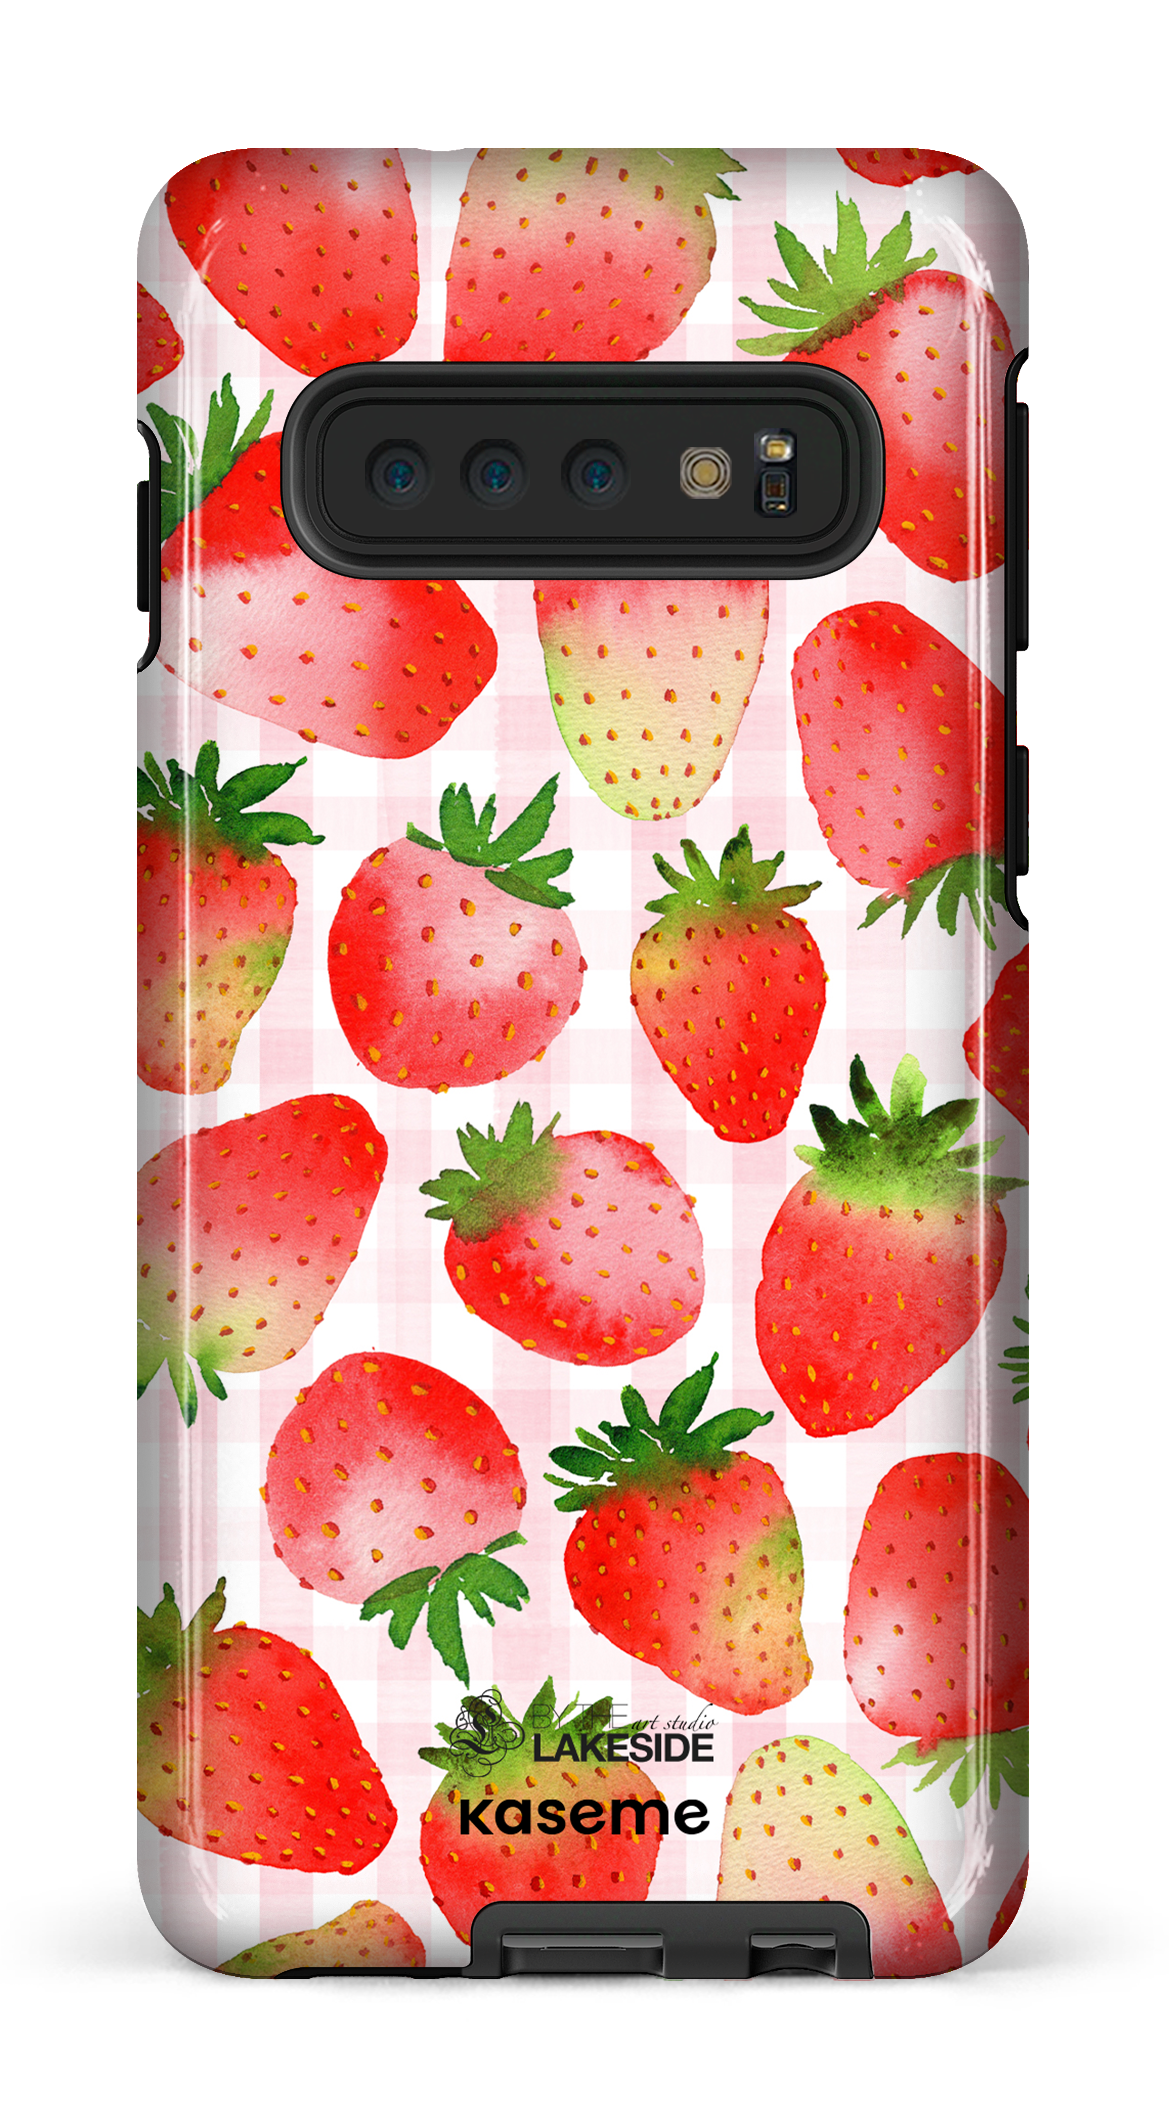 Strawberry Fields by Pooja Umrani - Galaxy S10